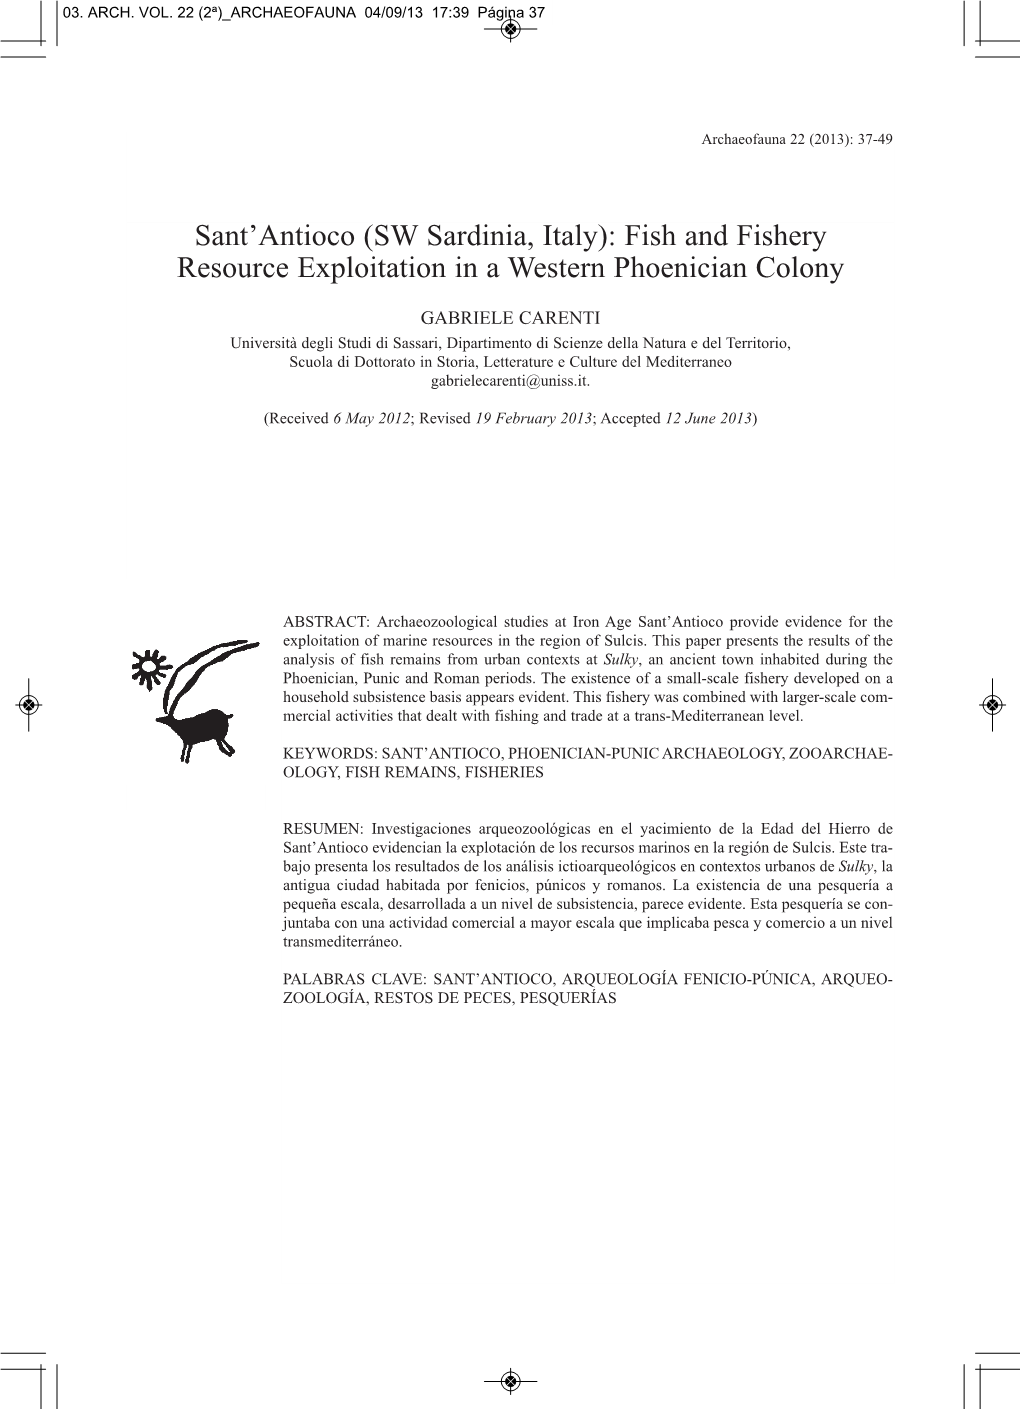 Sant'antioco (SW Sardinia, Italy): Fish and Fishery Resource Exploitation